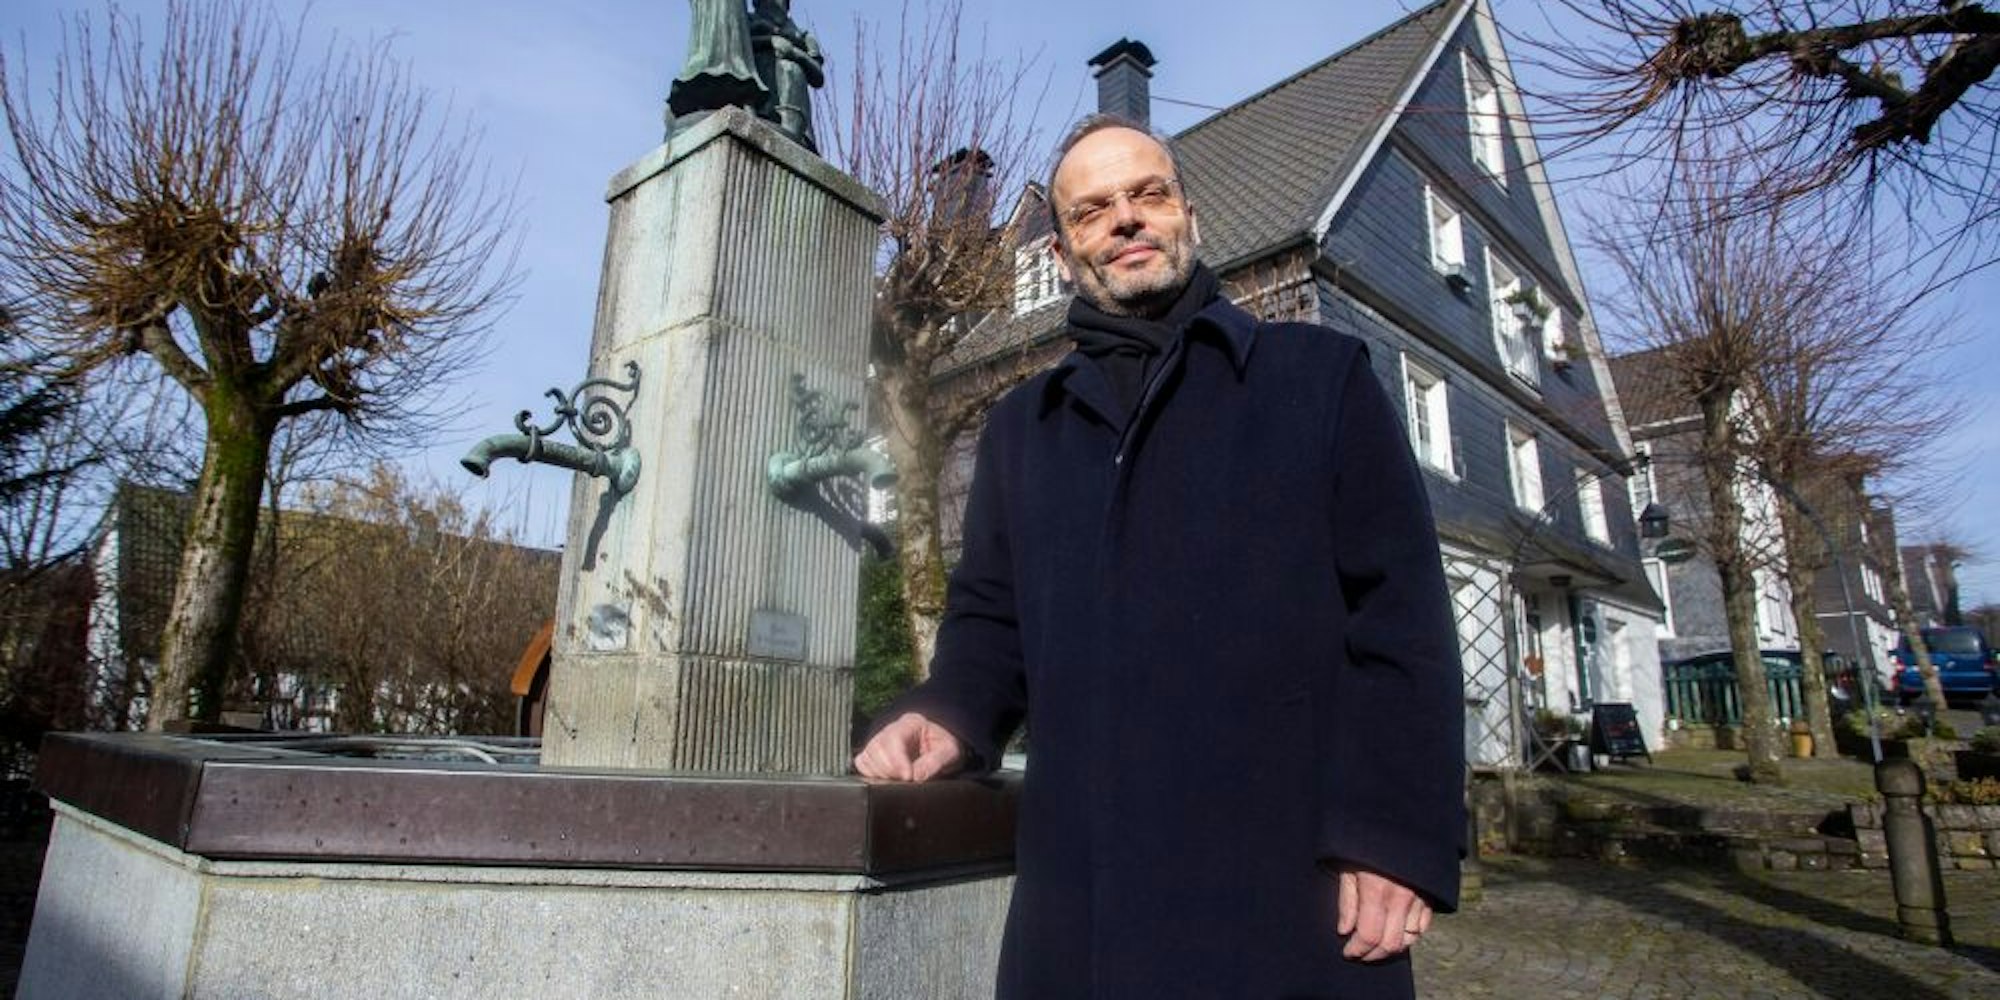 In der Altstadt Bergneustadts hatte Dr. Felix Klein vor dem Konzert Quartier bezogen.